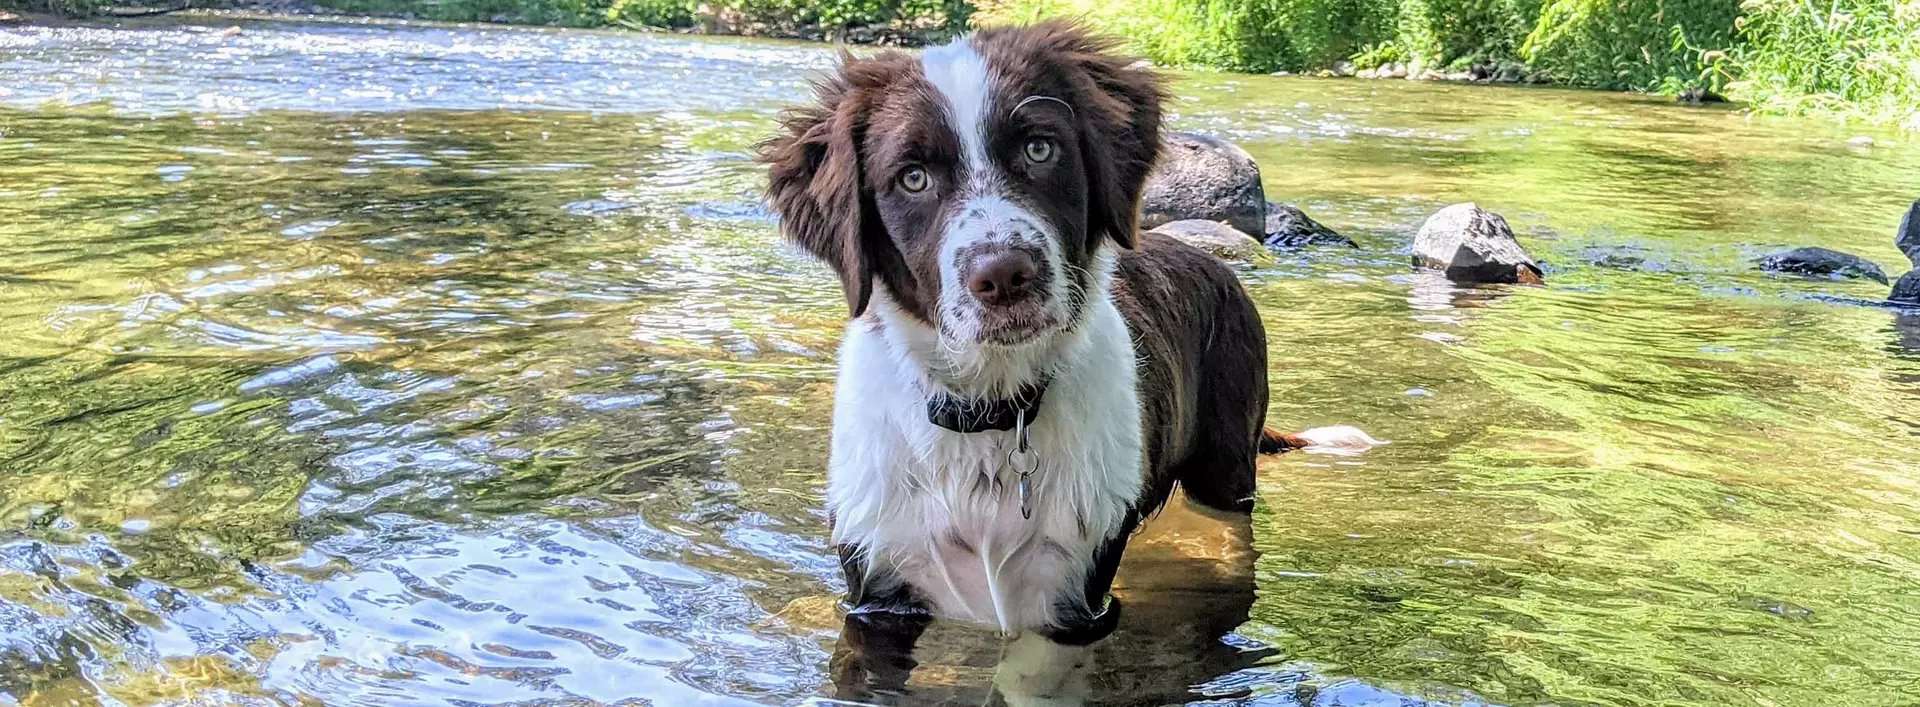 im Hundeurlaub in Flüssen und Bächen toben